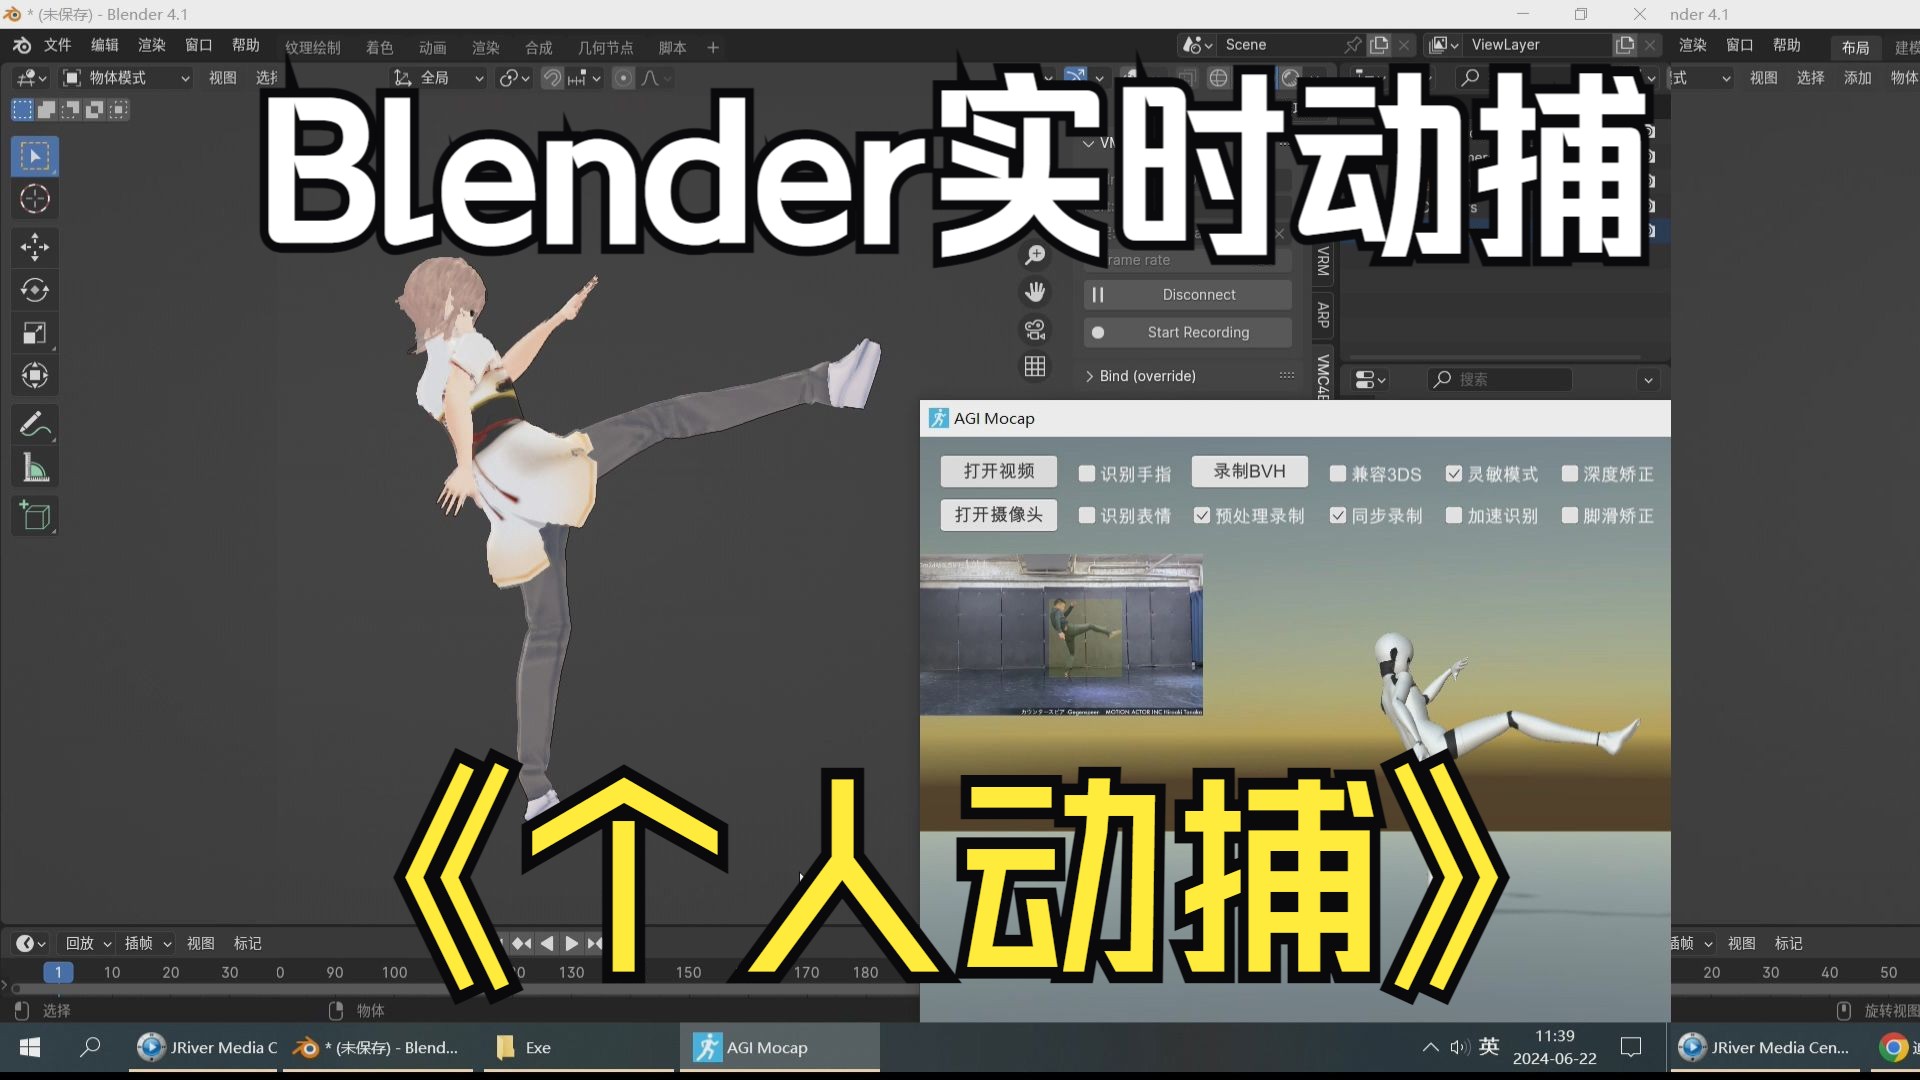 动捕AGI Mocap连接Blender实时动作捕捉软件DCC Blender无穿戴实时动捕软件 摄像头视频Blender动捕舞蹈 动作捕捉技术素材